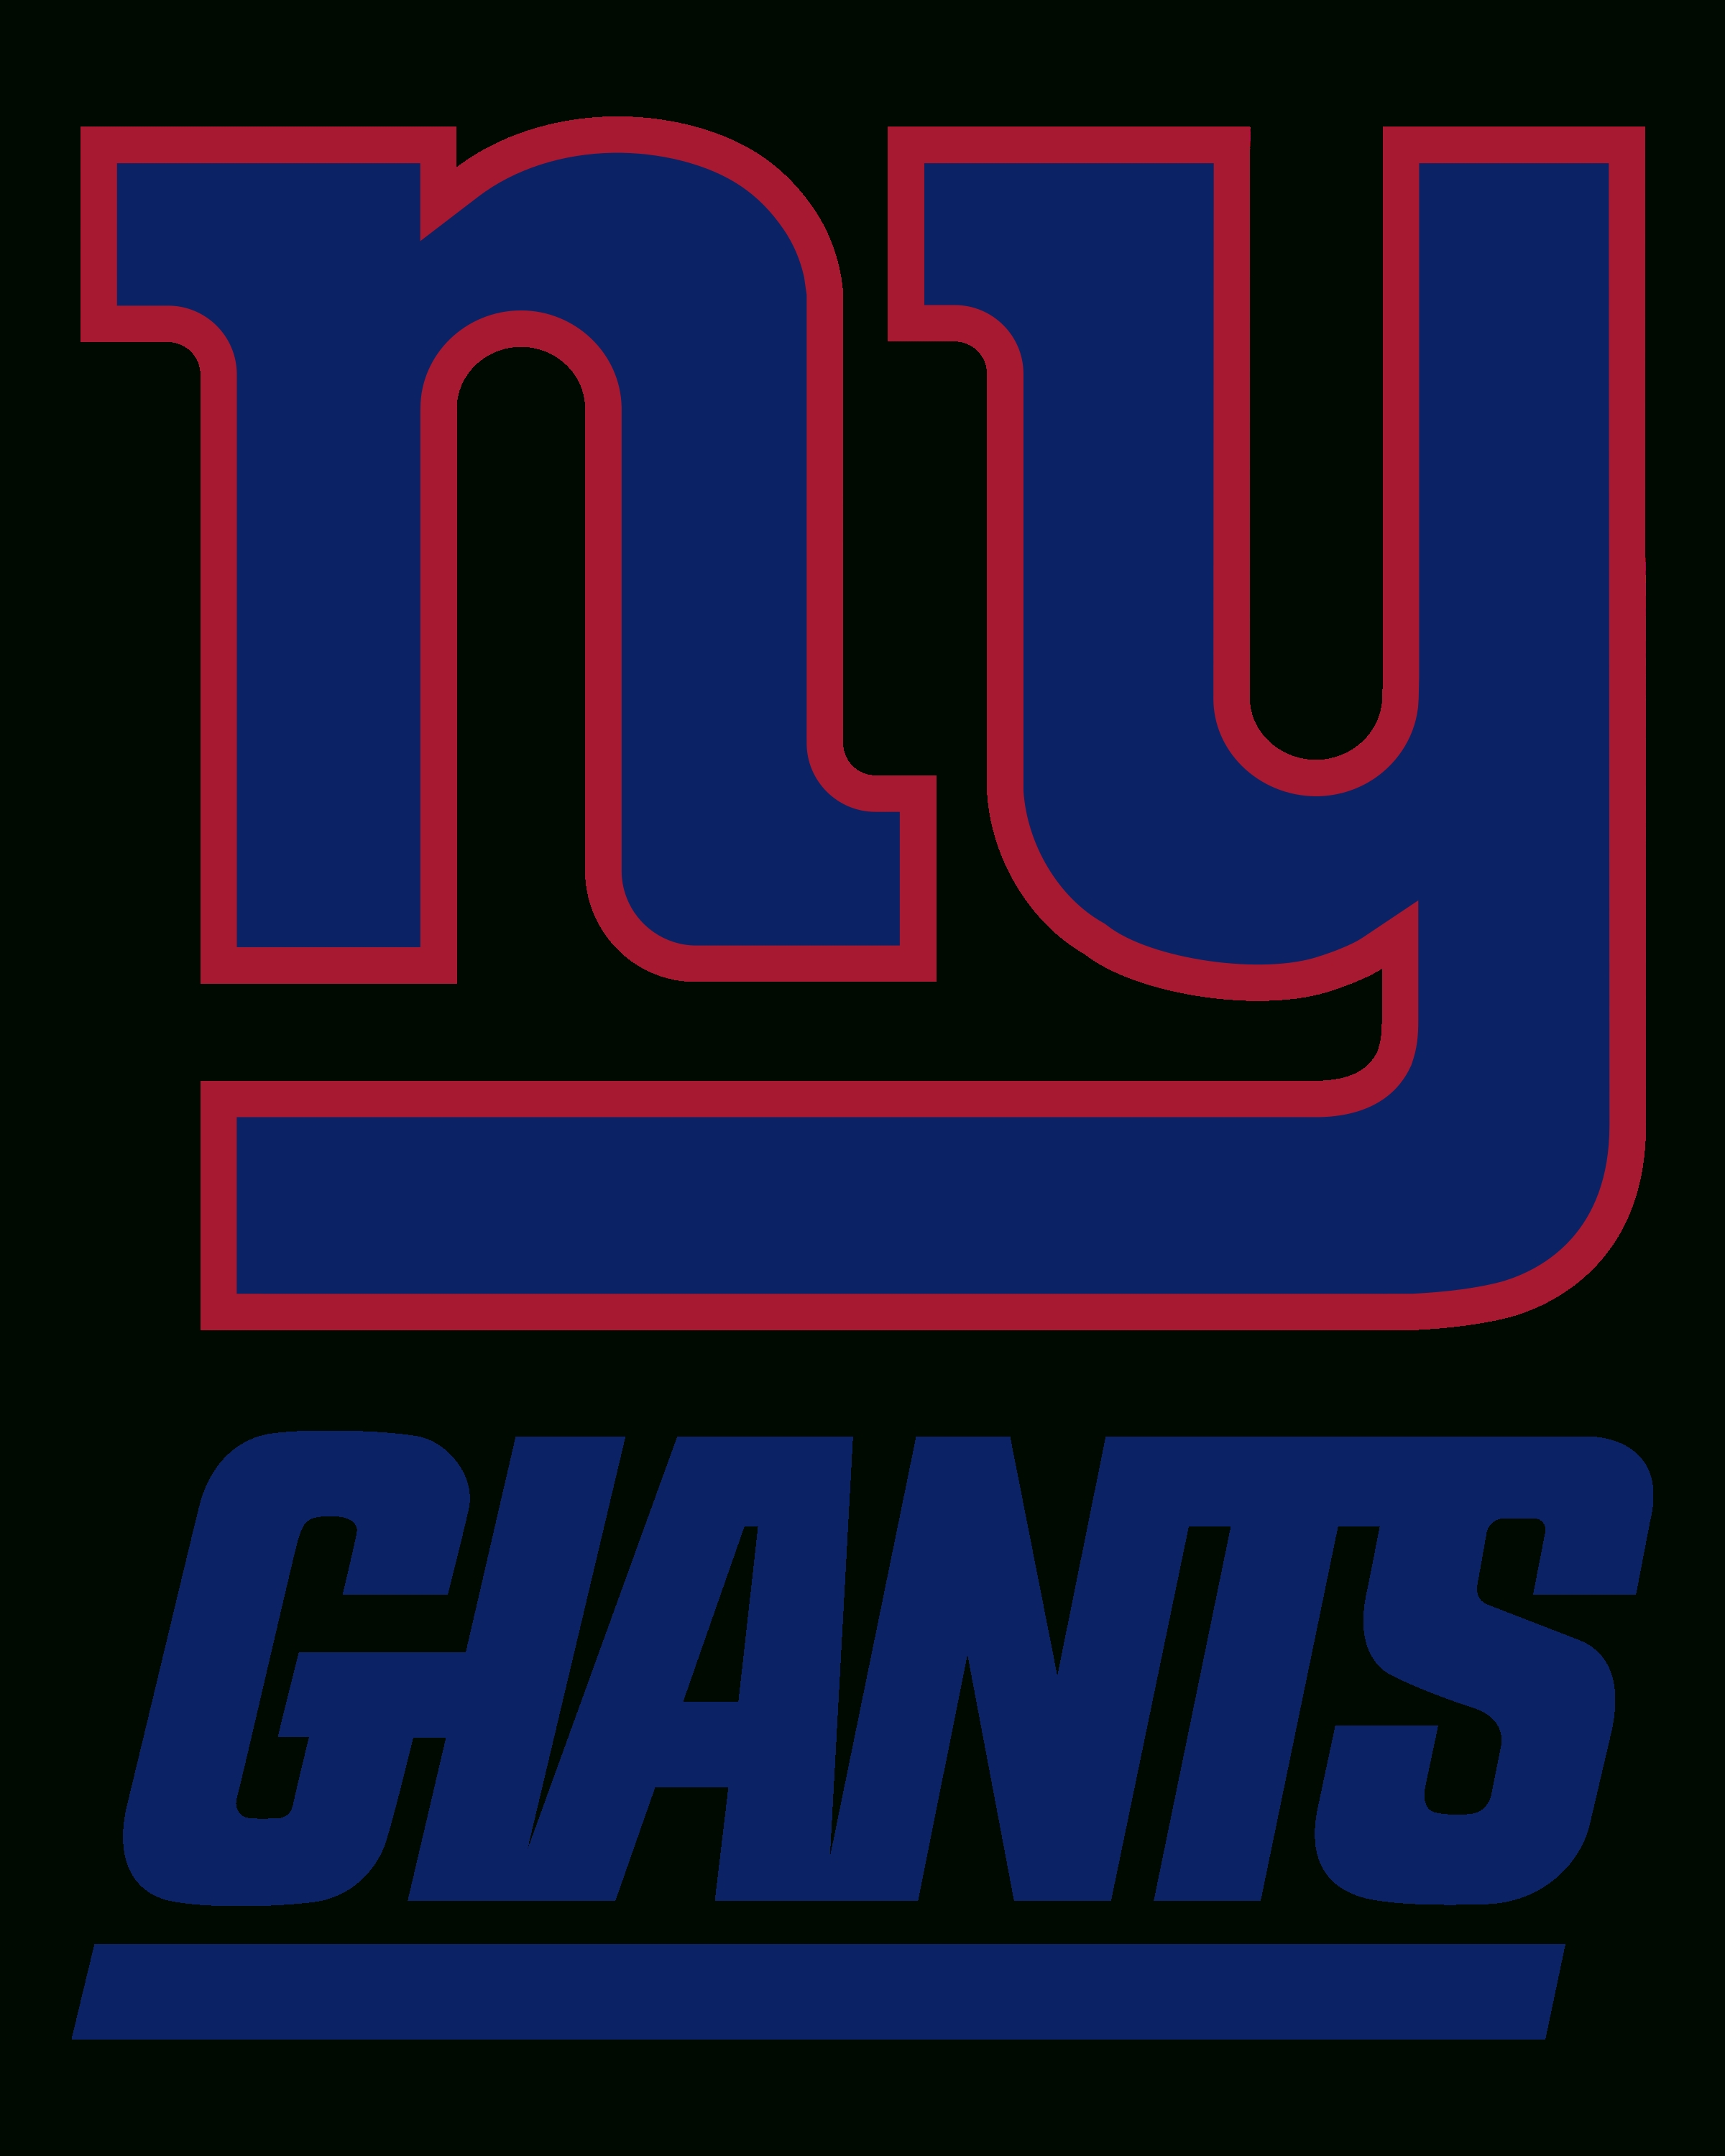 10 Best New York Giants Logo Pics FULL HD 1920×1080 For PC ...